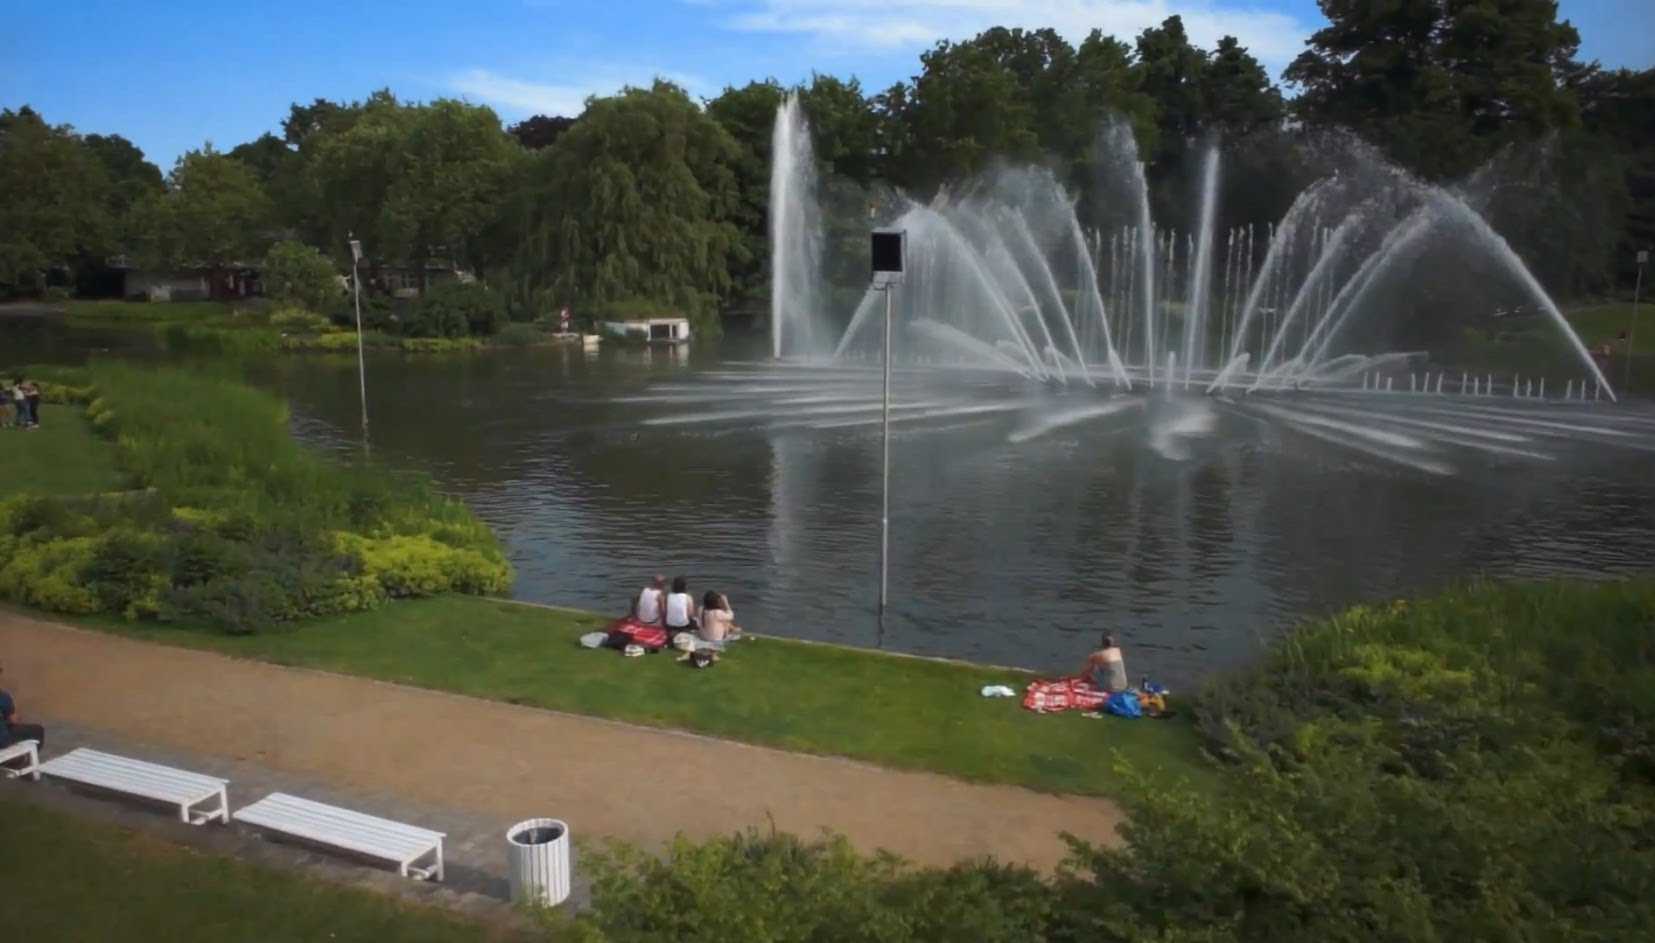 حديقة بلانتن اون بلومن من اجمل حدائق المانيا هامبورغ